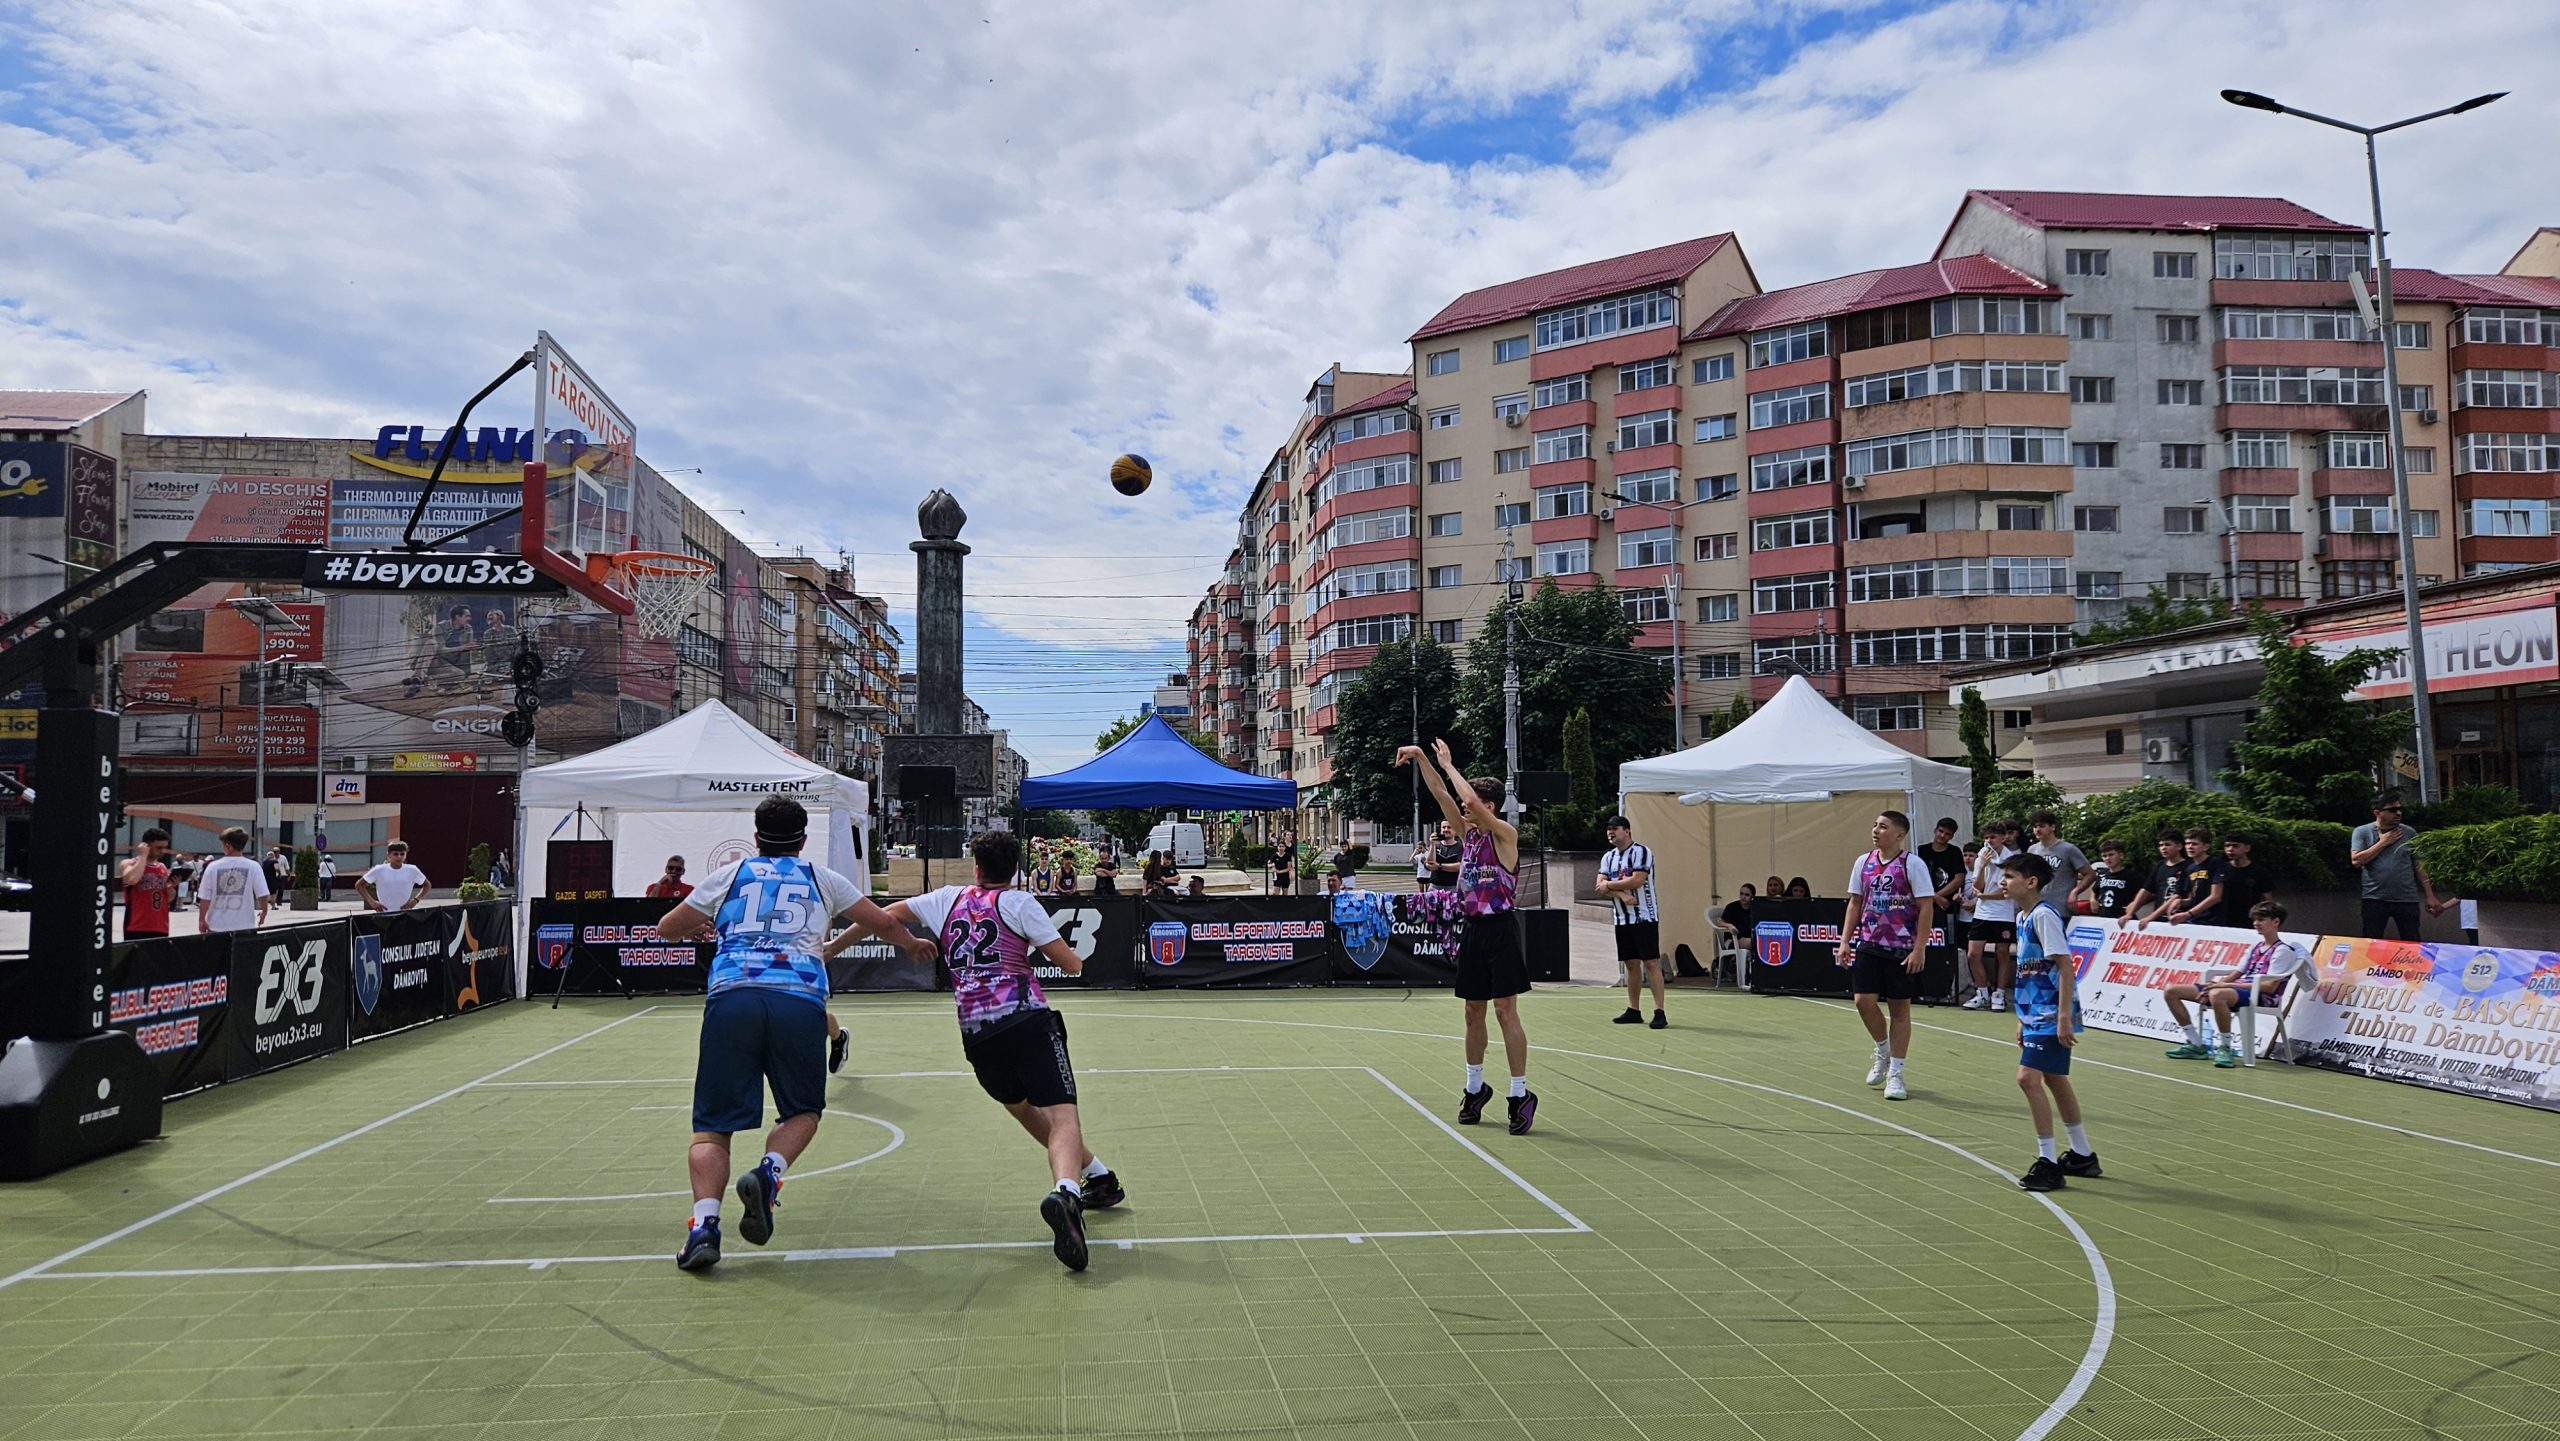 Turneul de baschet 3×3 „Iubim Dâmbovița”, în Piața Tricolorului din Târgoviște. Evenimentul este organizat de Consiliul Județean Dâmbovița și Clubul Sportiv Școlar Târgoviște.